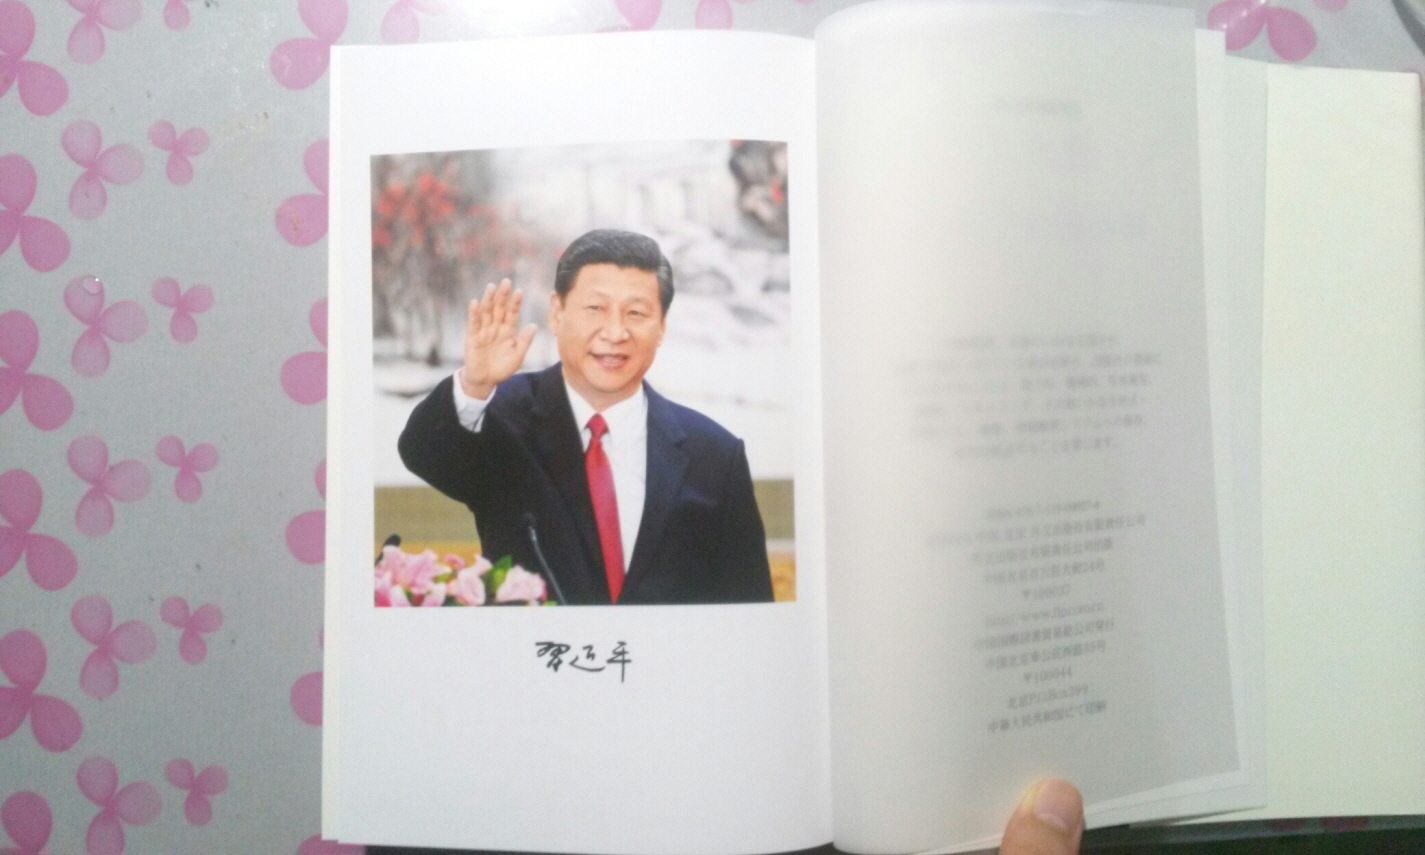 시진핑 국정운영을 말하다 習近平 國政運營を語る